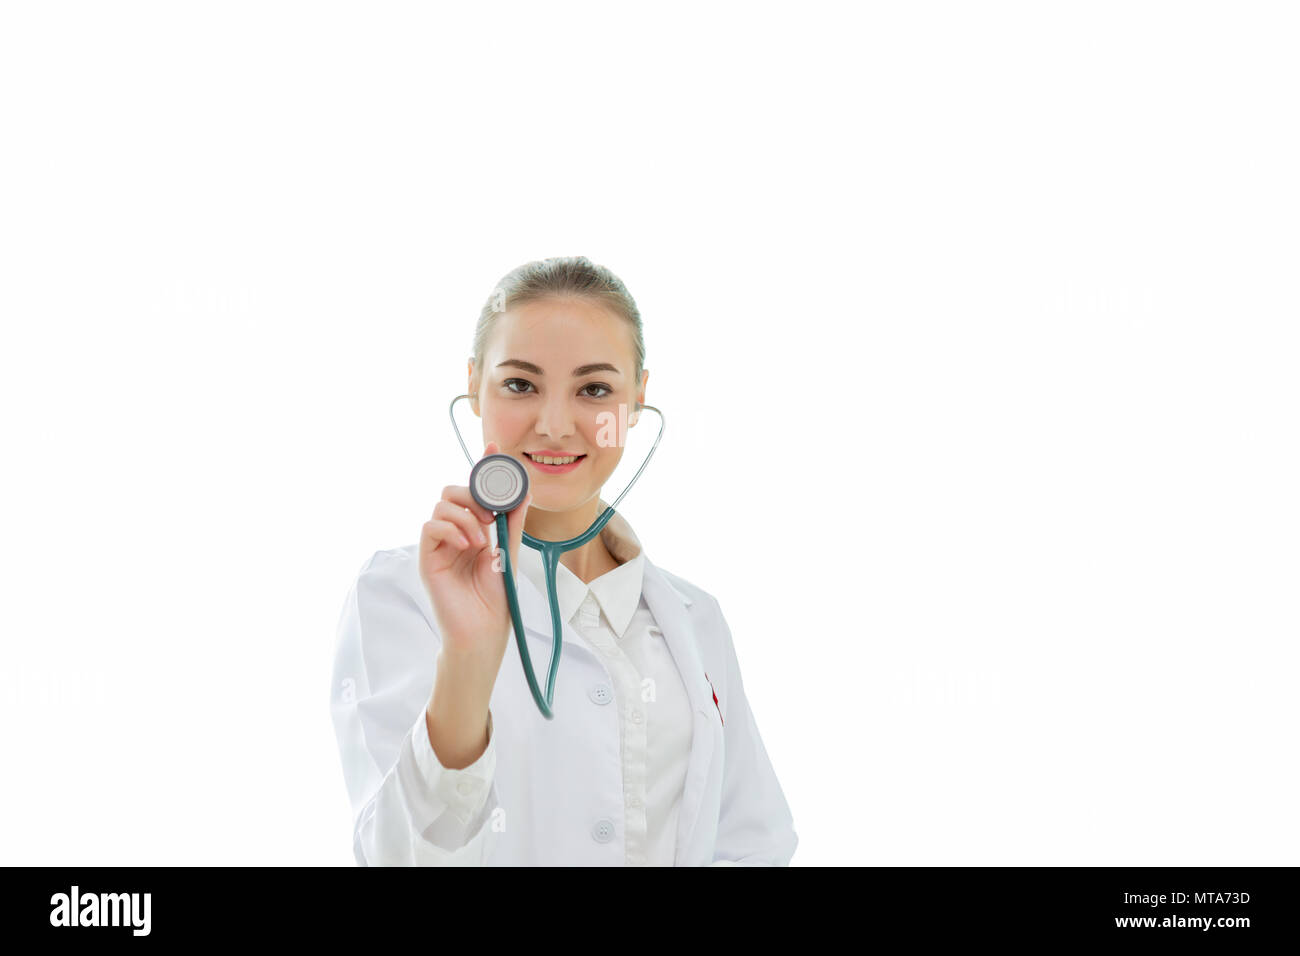 Confiant de jeunes femmes en uniforme blanc beau médecin holding stethoscope prêts et toujours prêt à vous aider. Isolé sur fond blanc Banque D'Images